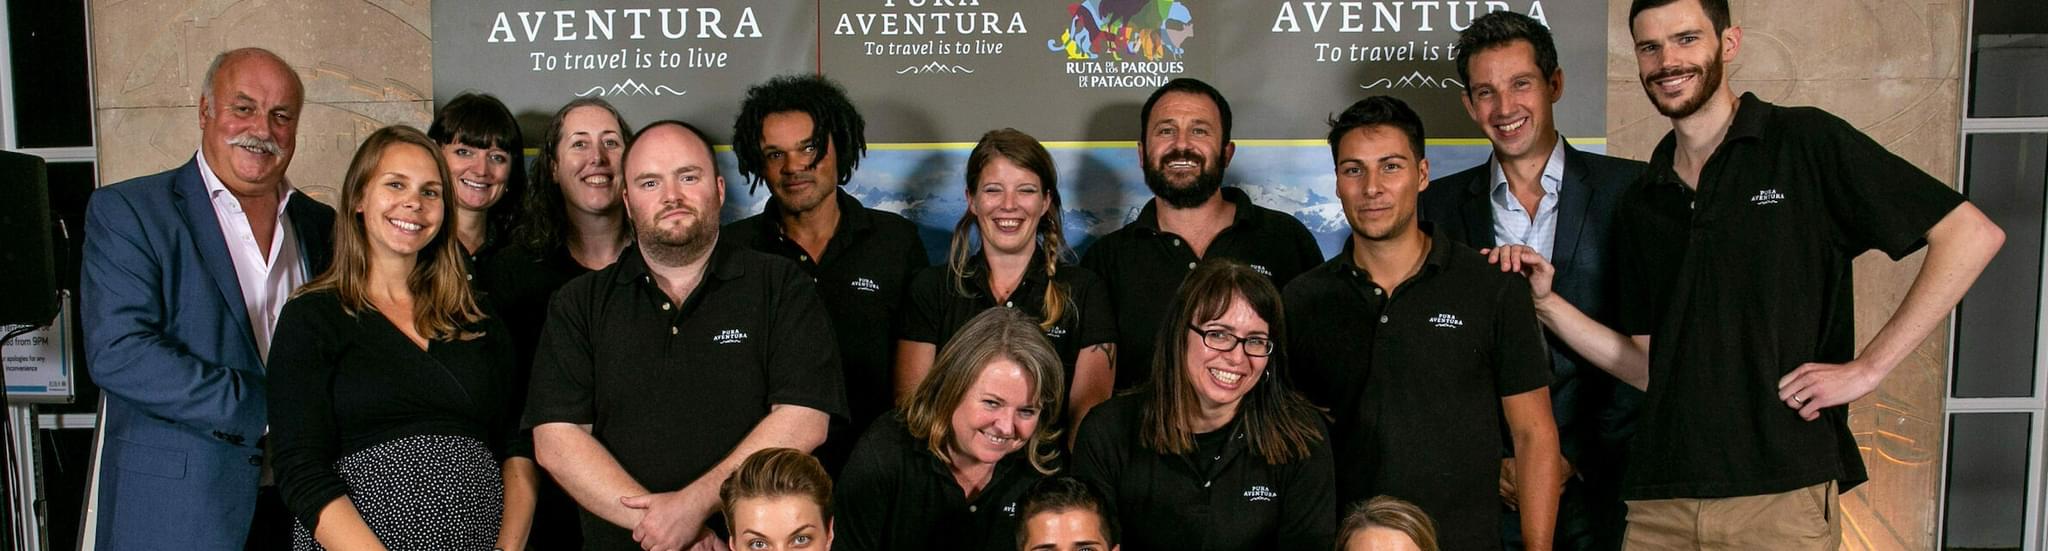 Pura aventura team at riba september 2019